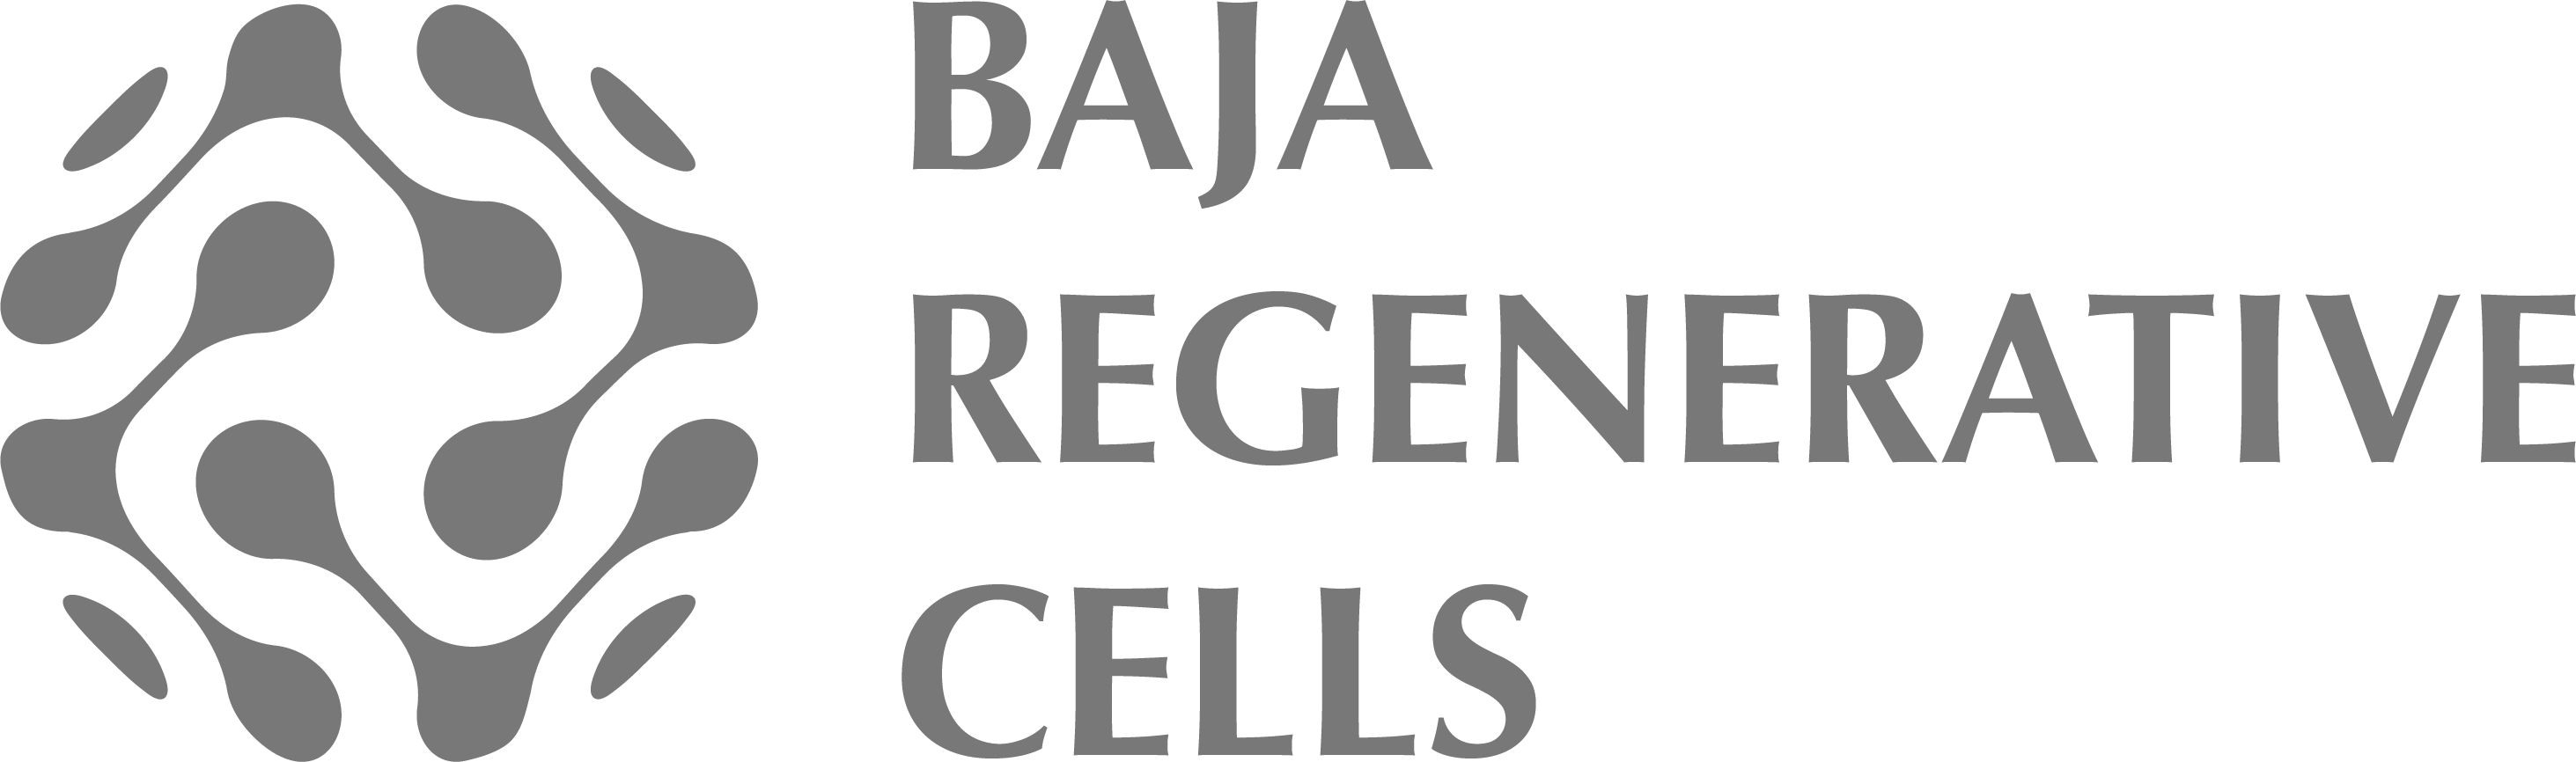 Baja Regenerative Cells